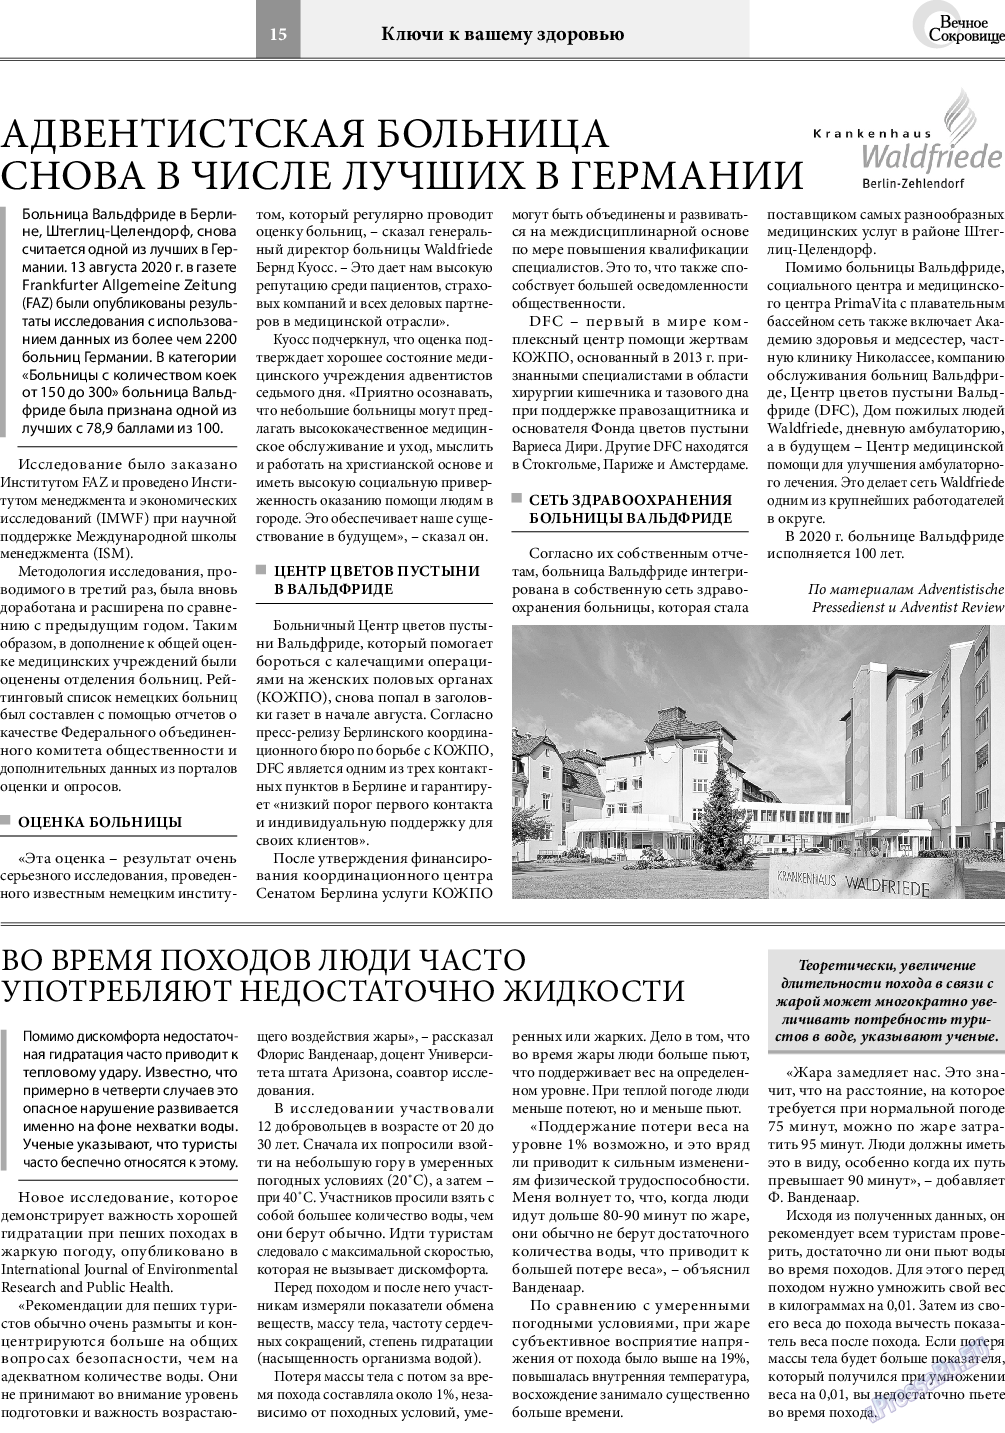 Вечное сокровище, газета. 2020 №5 стр.15